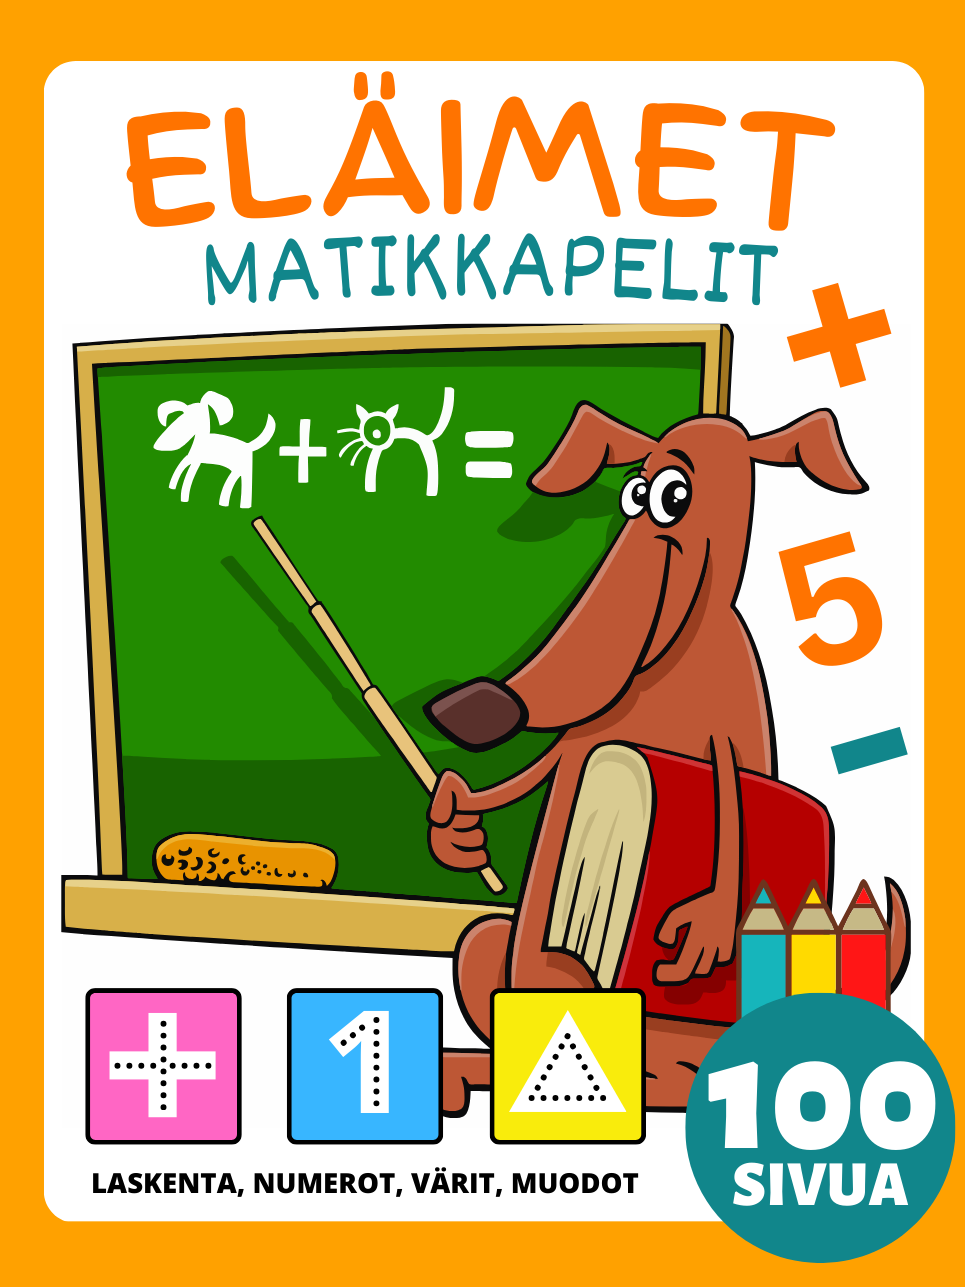 Esikoulun matematiikkapelit Eläinten aktiviteettikirja 4-8-vuotiaille lapsille